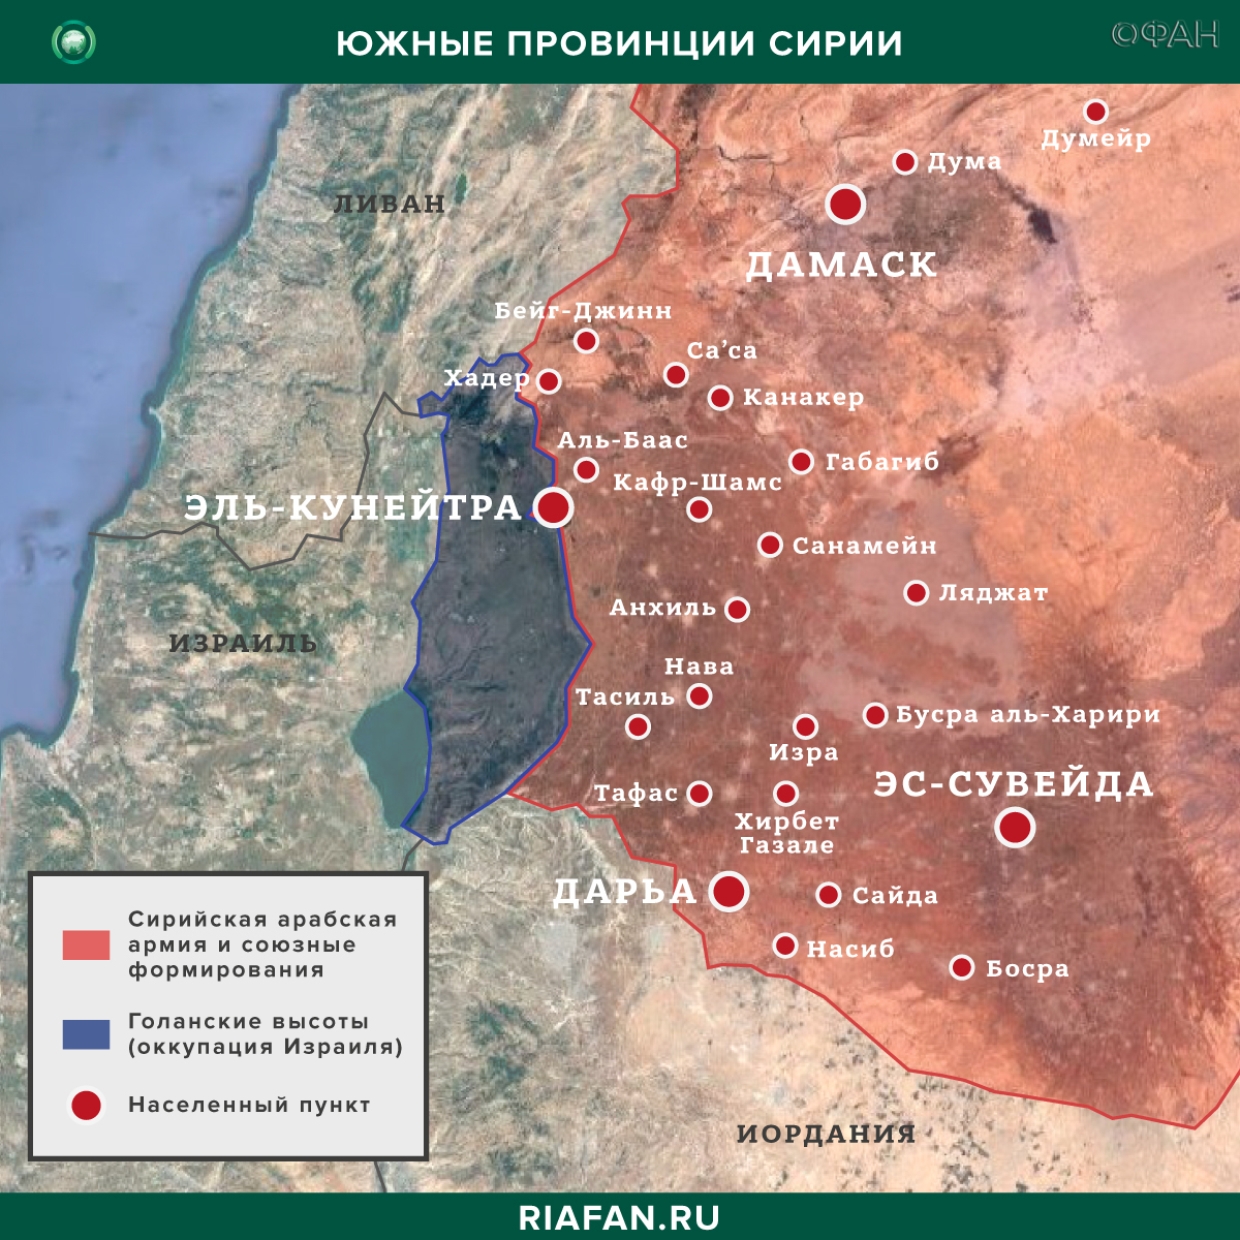 Nouvelles de Syrie 4 Mars 22.30: САА освободила деревню Аль-Фатыра в Идлибе,  саперы обезвредили 35 СВУ на юго-западе САР